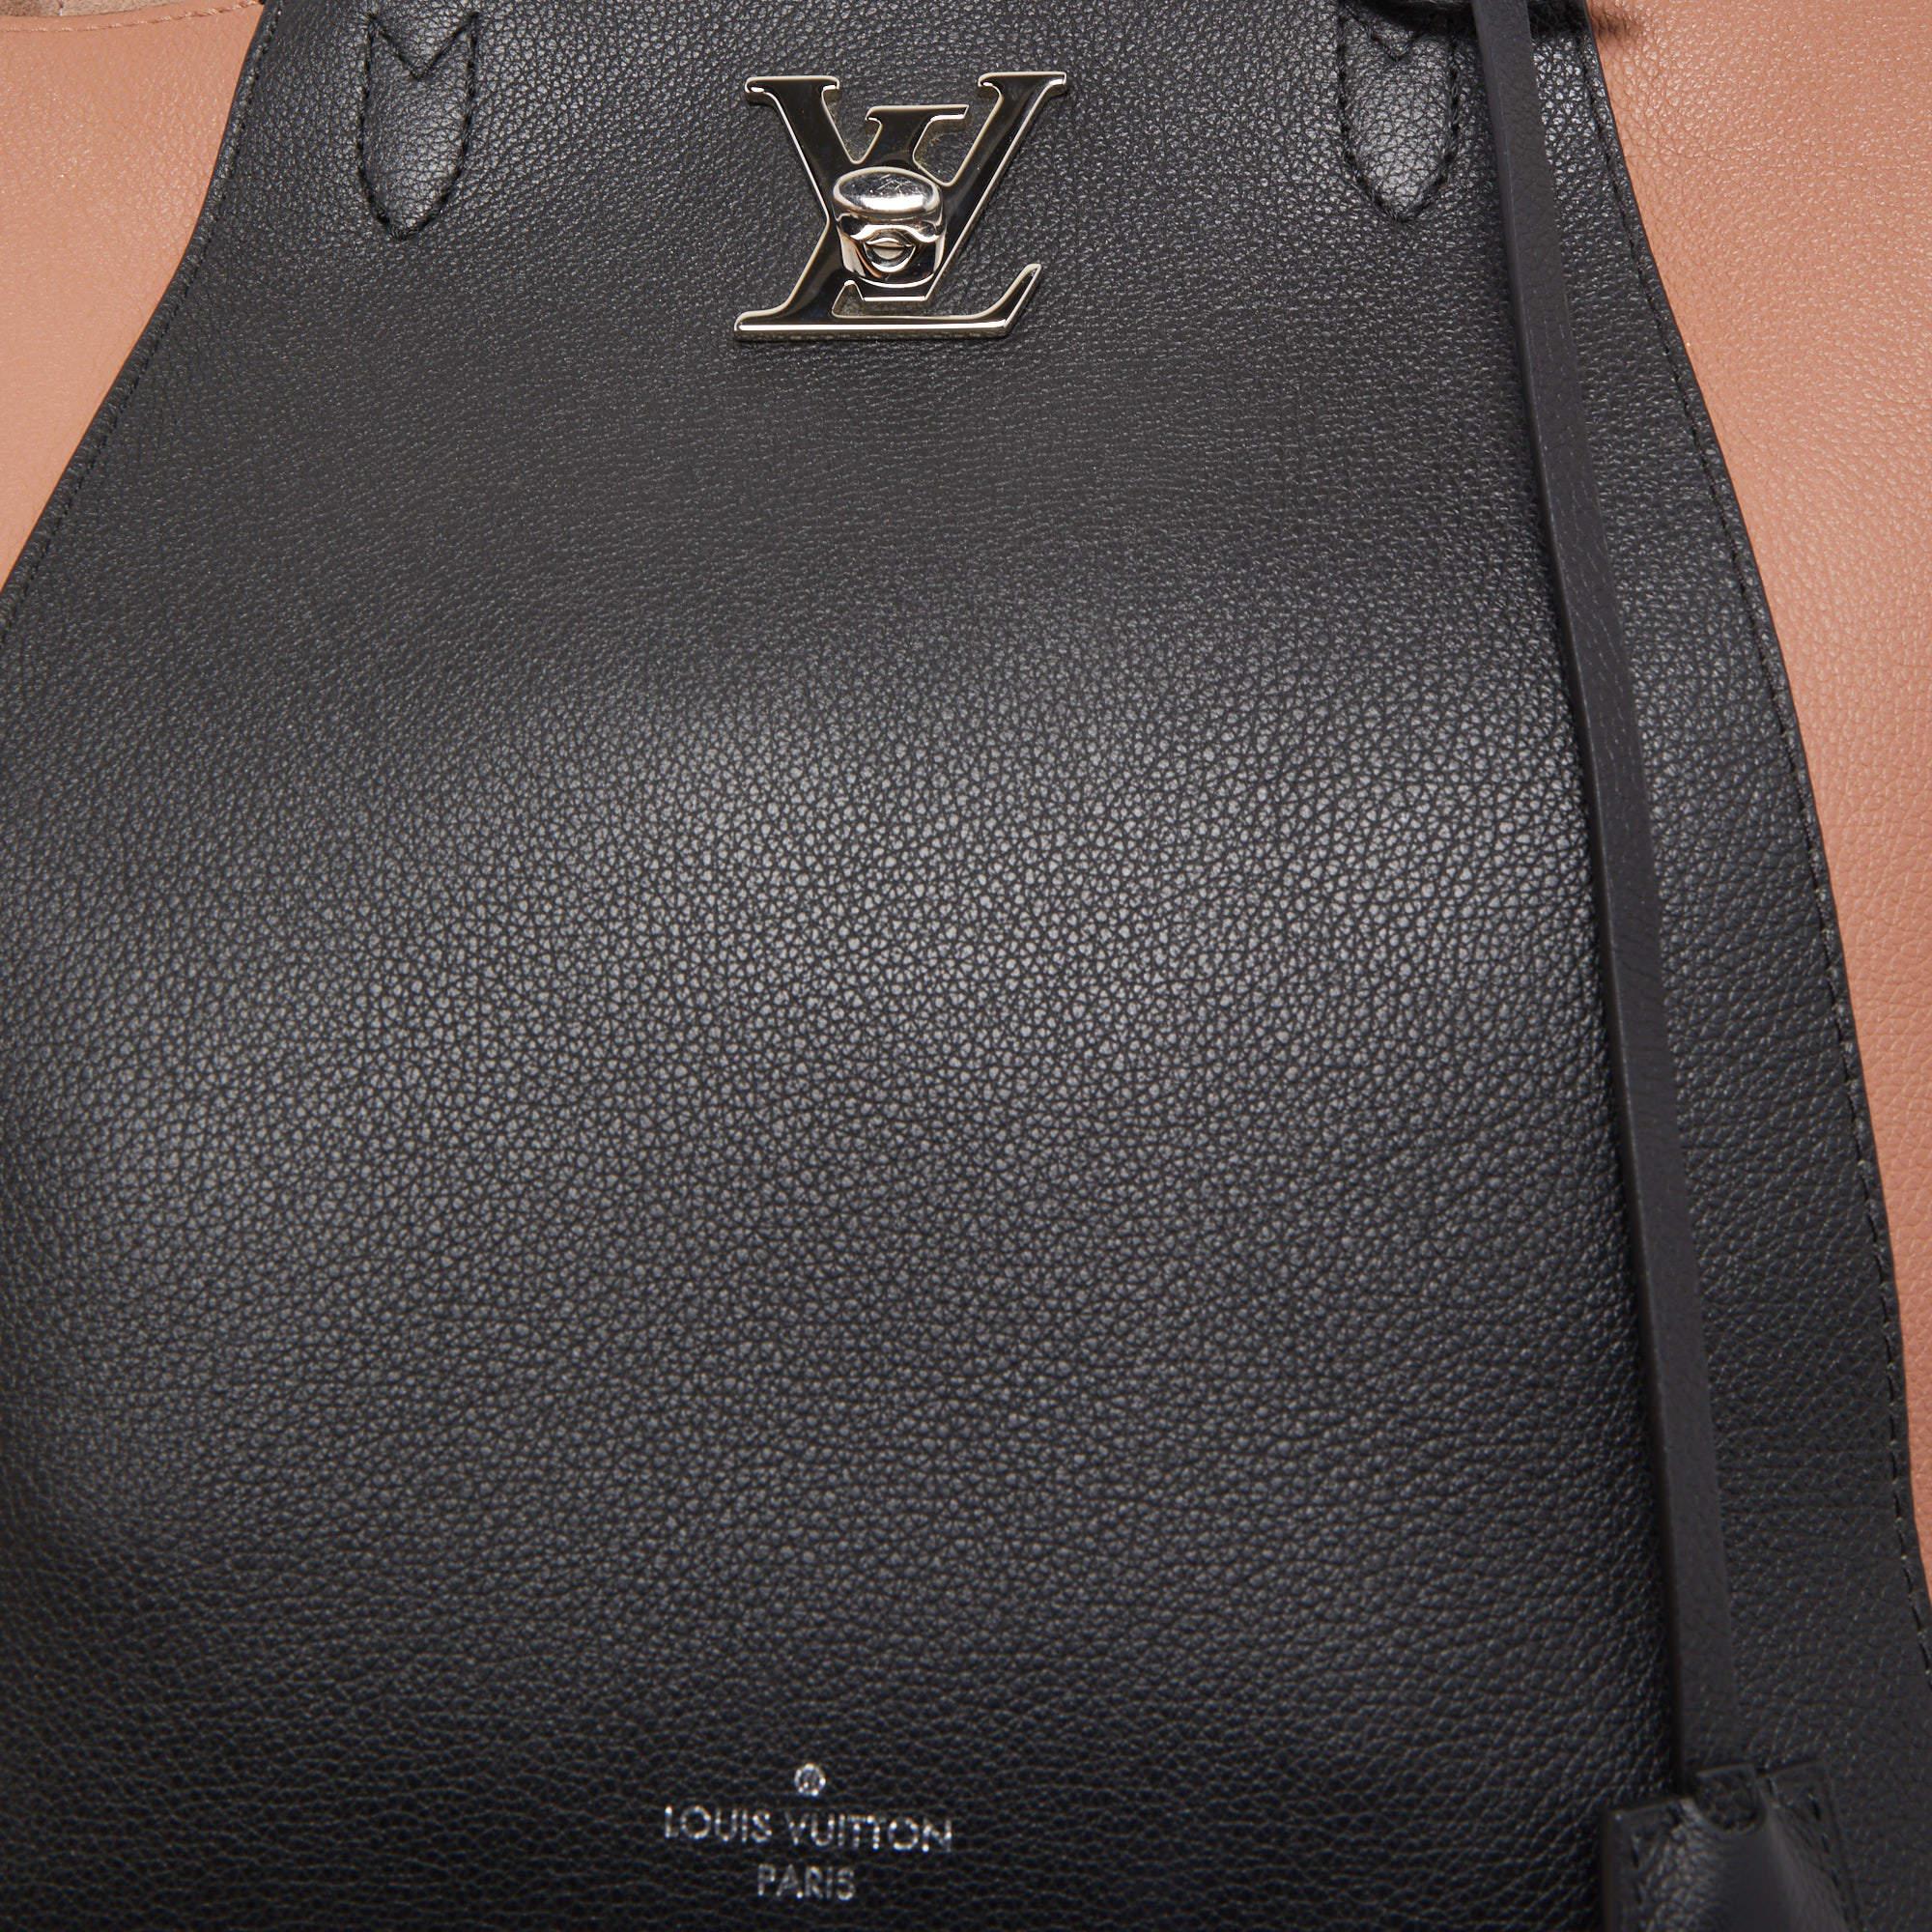 Louis Vuitton Rose/Black Leather Lockme Cabas Bag 8